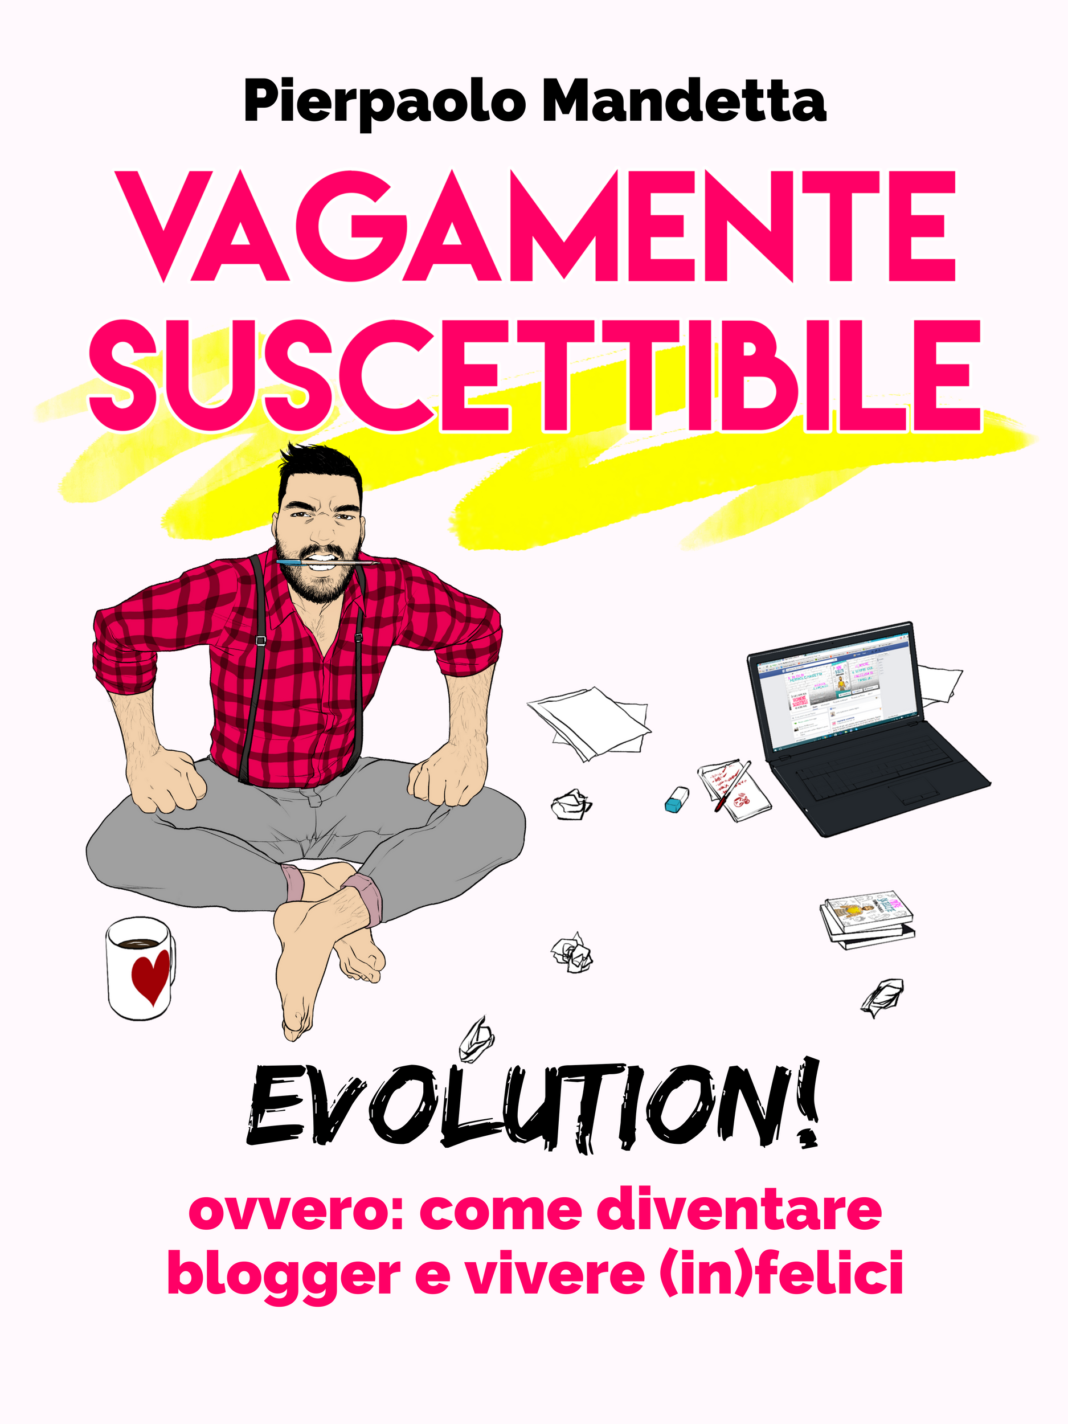 Vagamente Suscettibile Evolution! - Pierpaolo Mandetta 2018